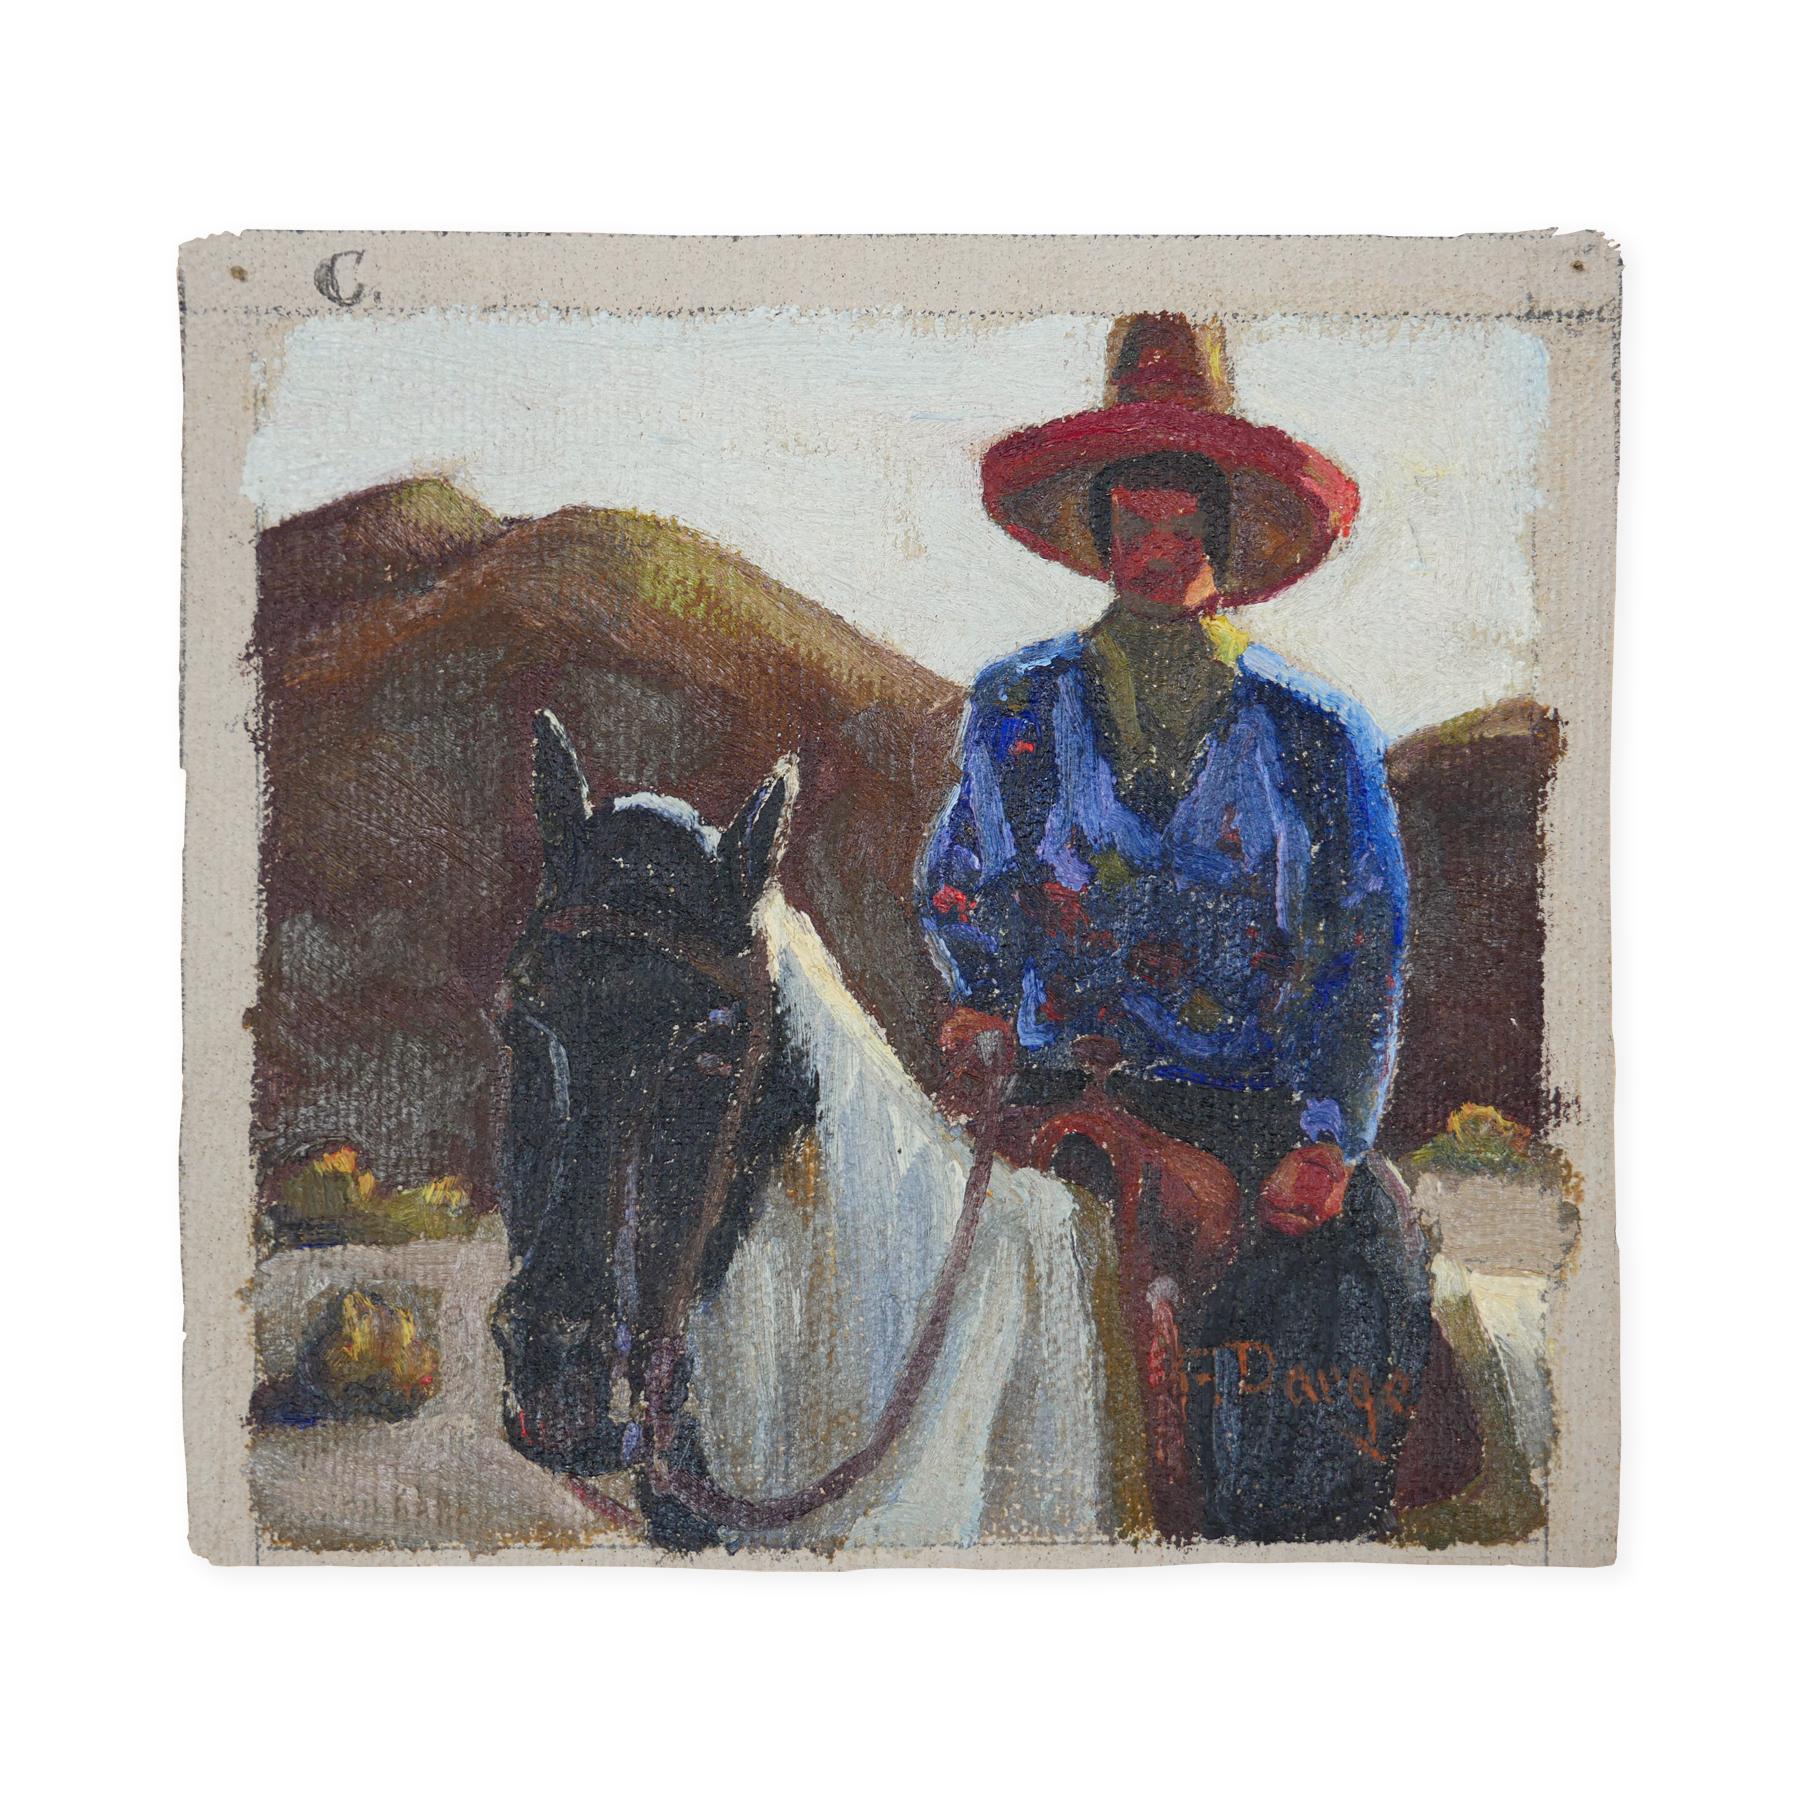 Peinture impressionniste abstraite bleue, rouge et brune d'un cow-boy sur un cheval - Painting de Fred Darge